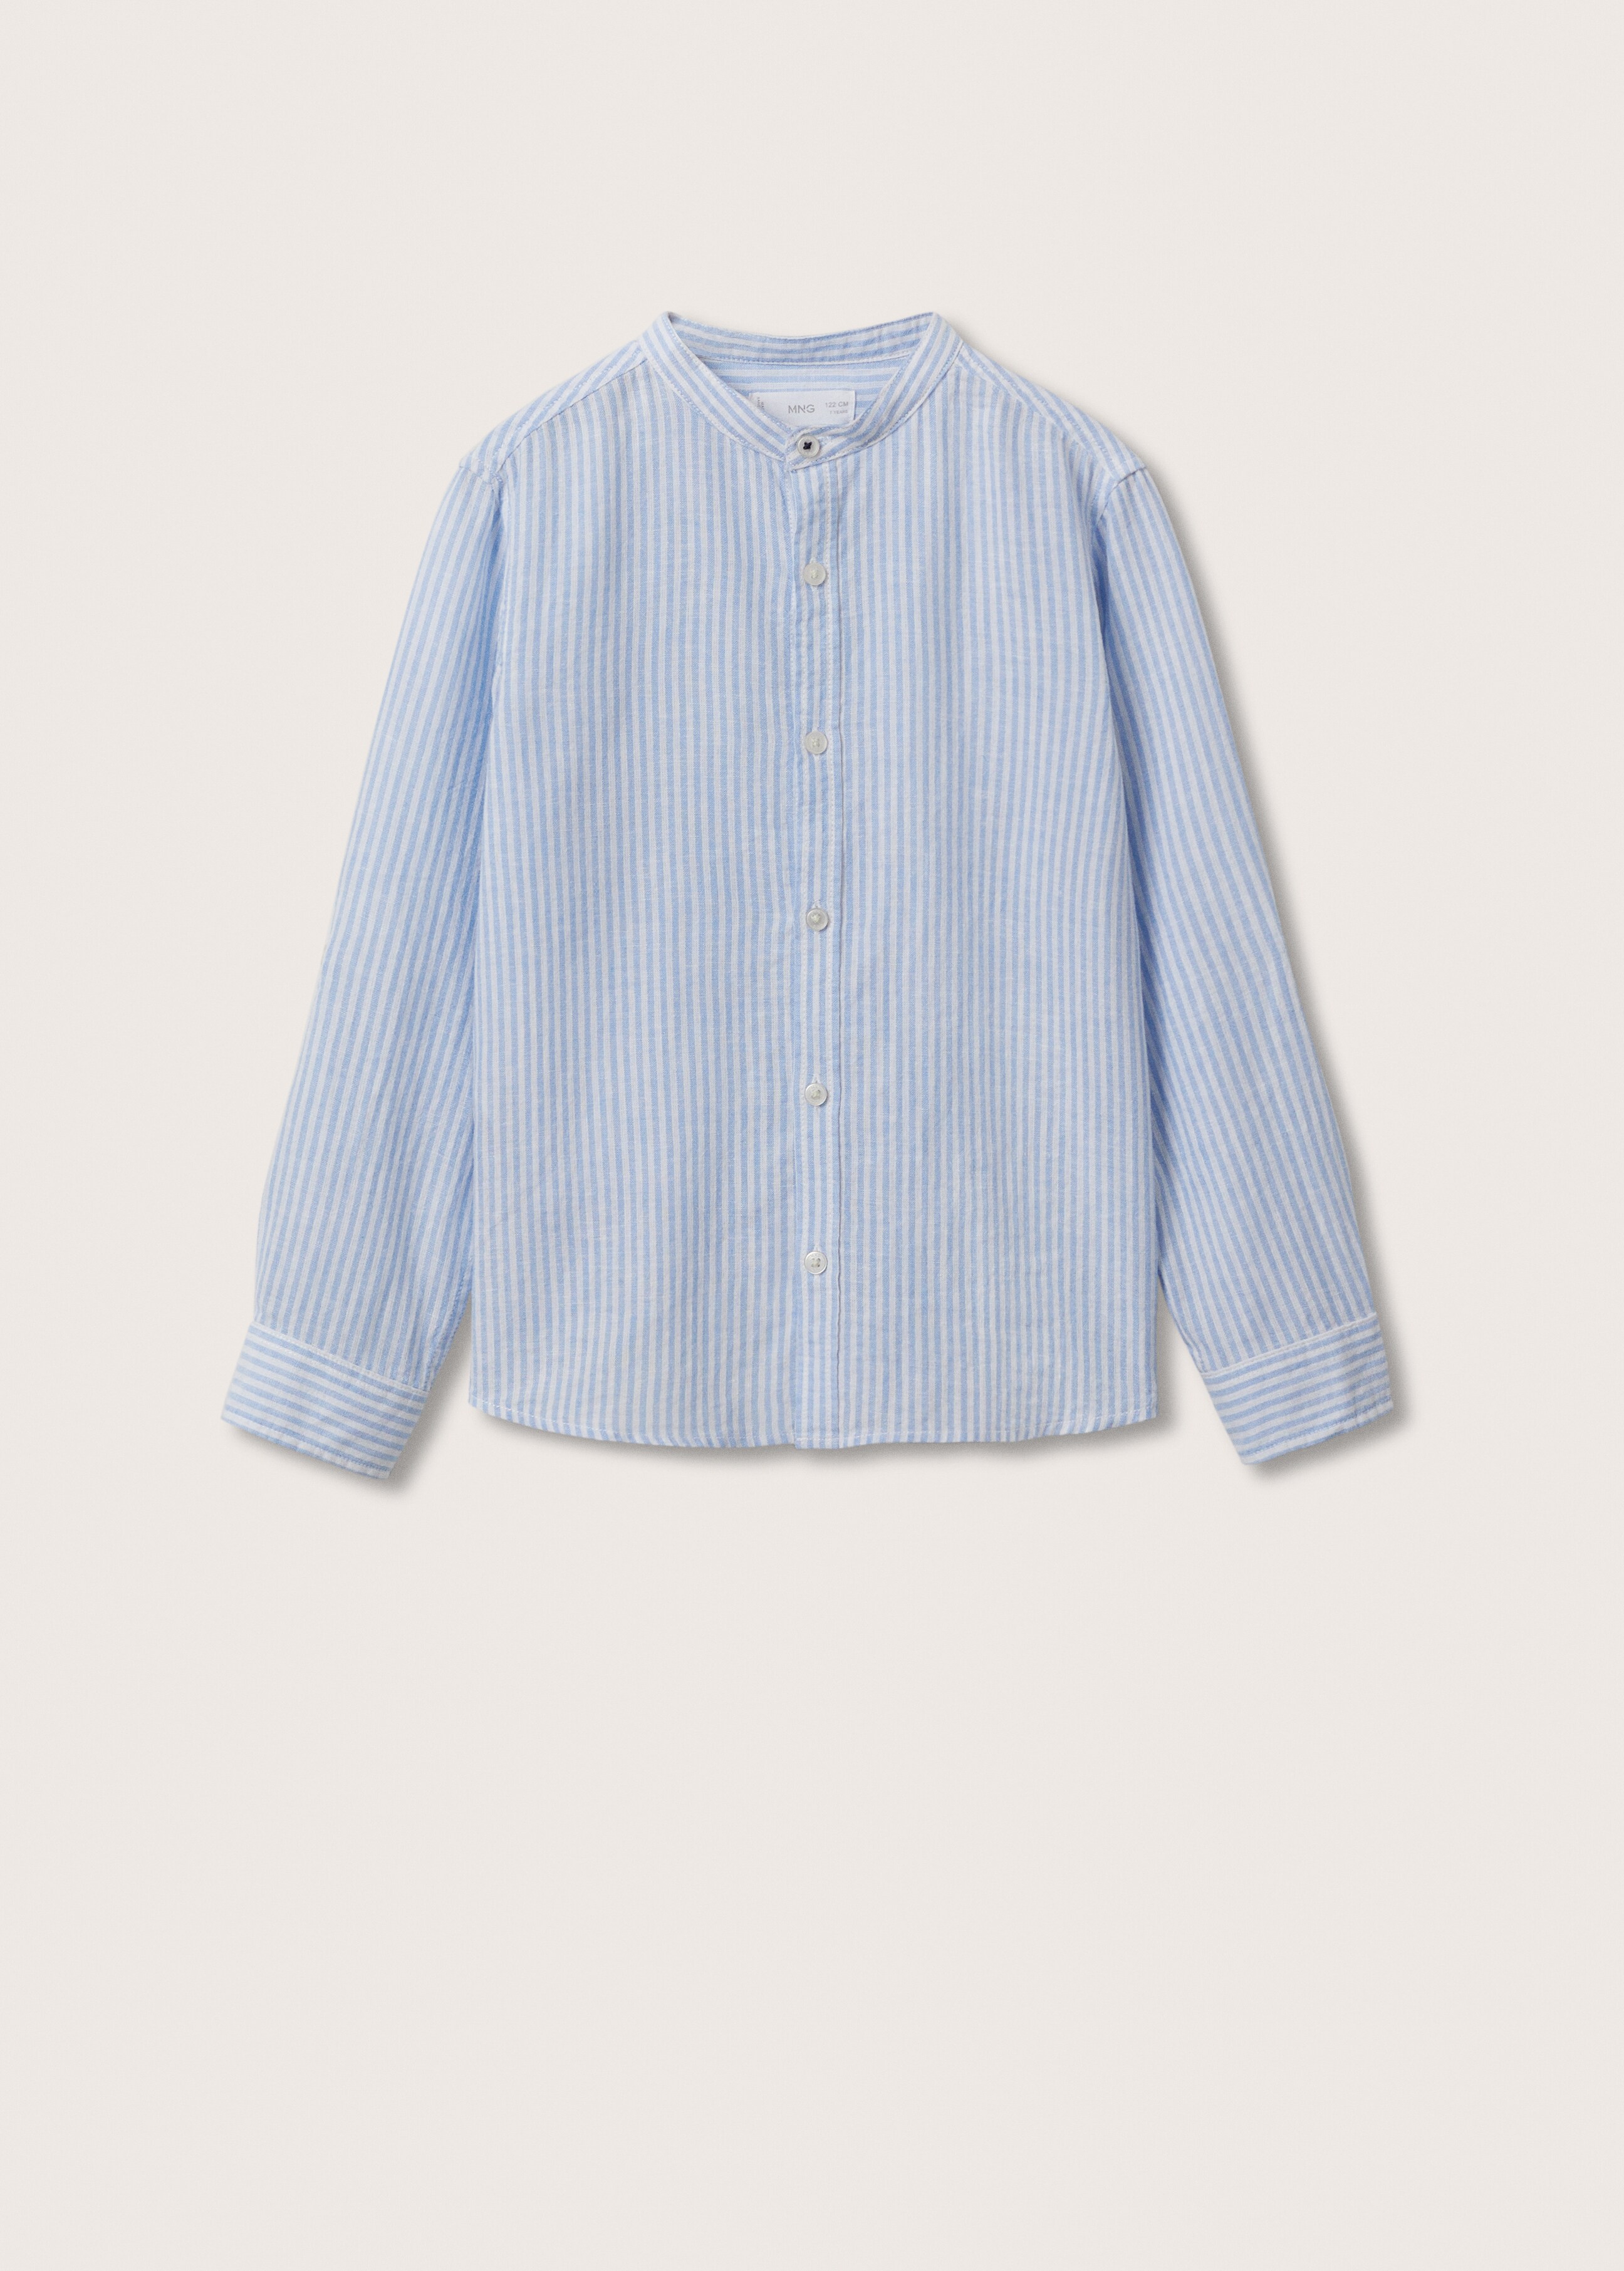 Camisa algodón lino - Artículo sin modelo